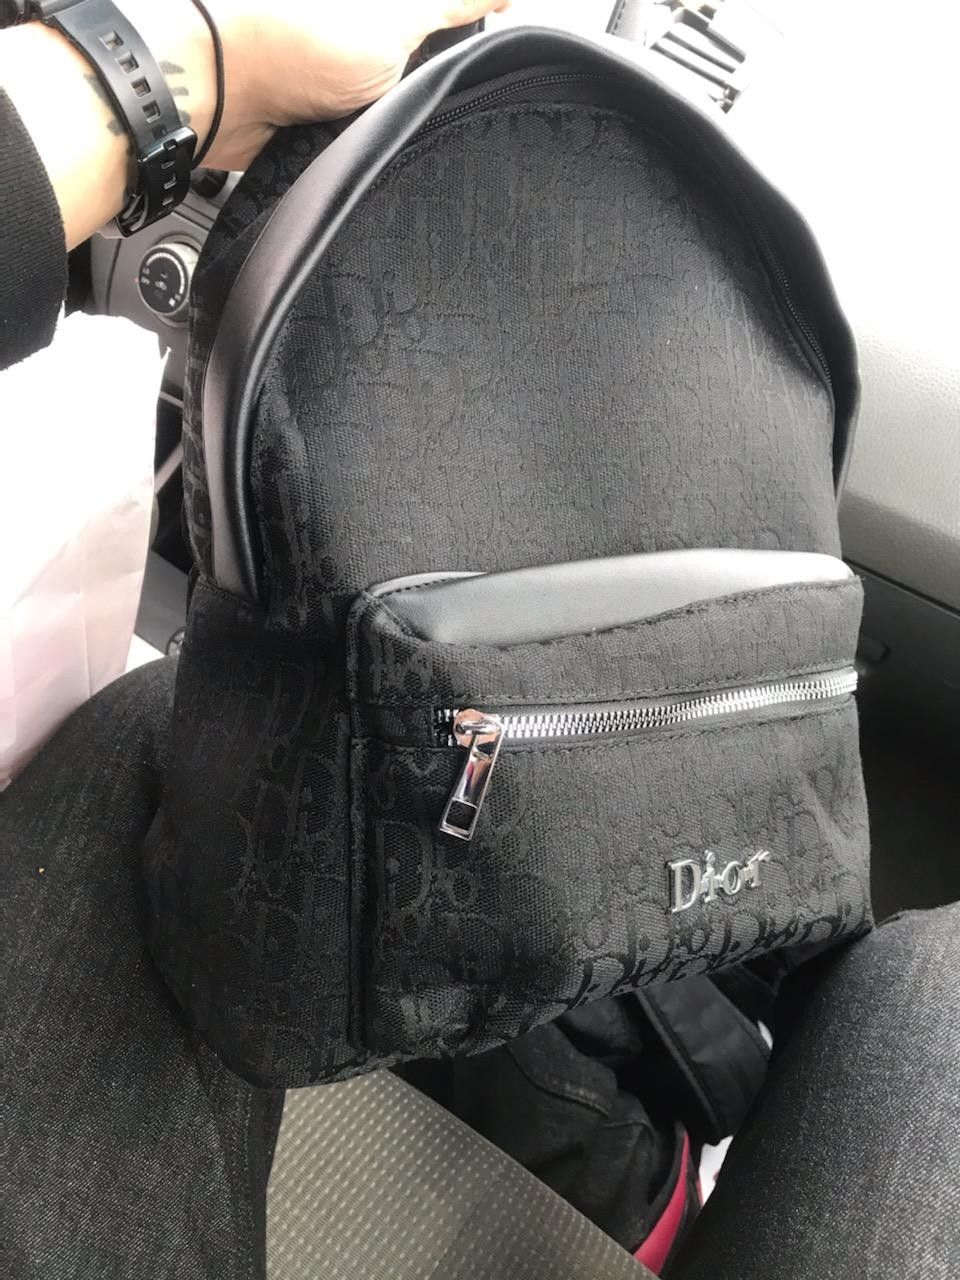 Back pack book bag